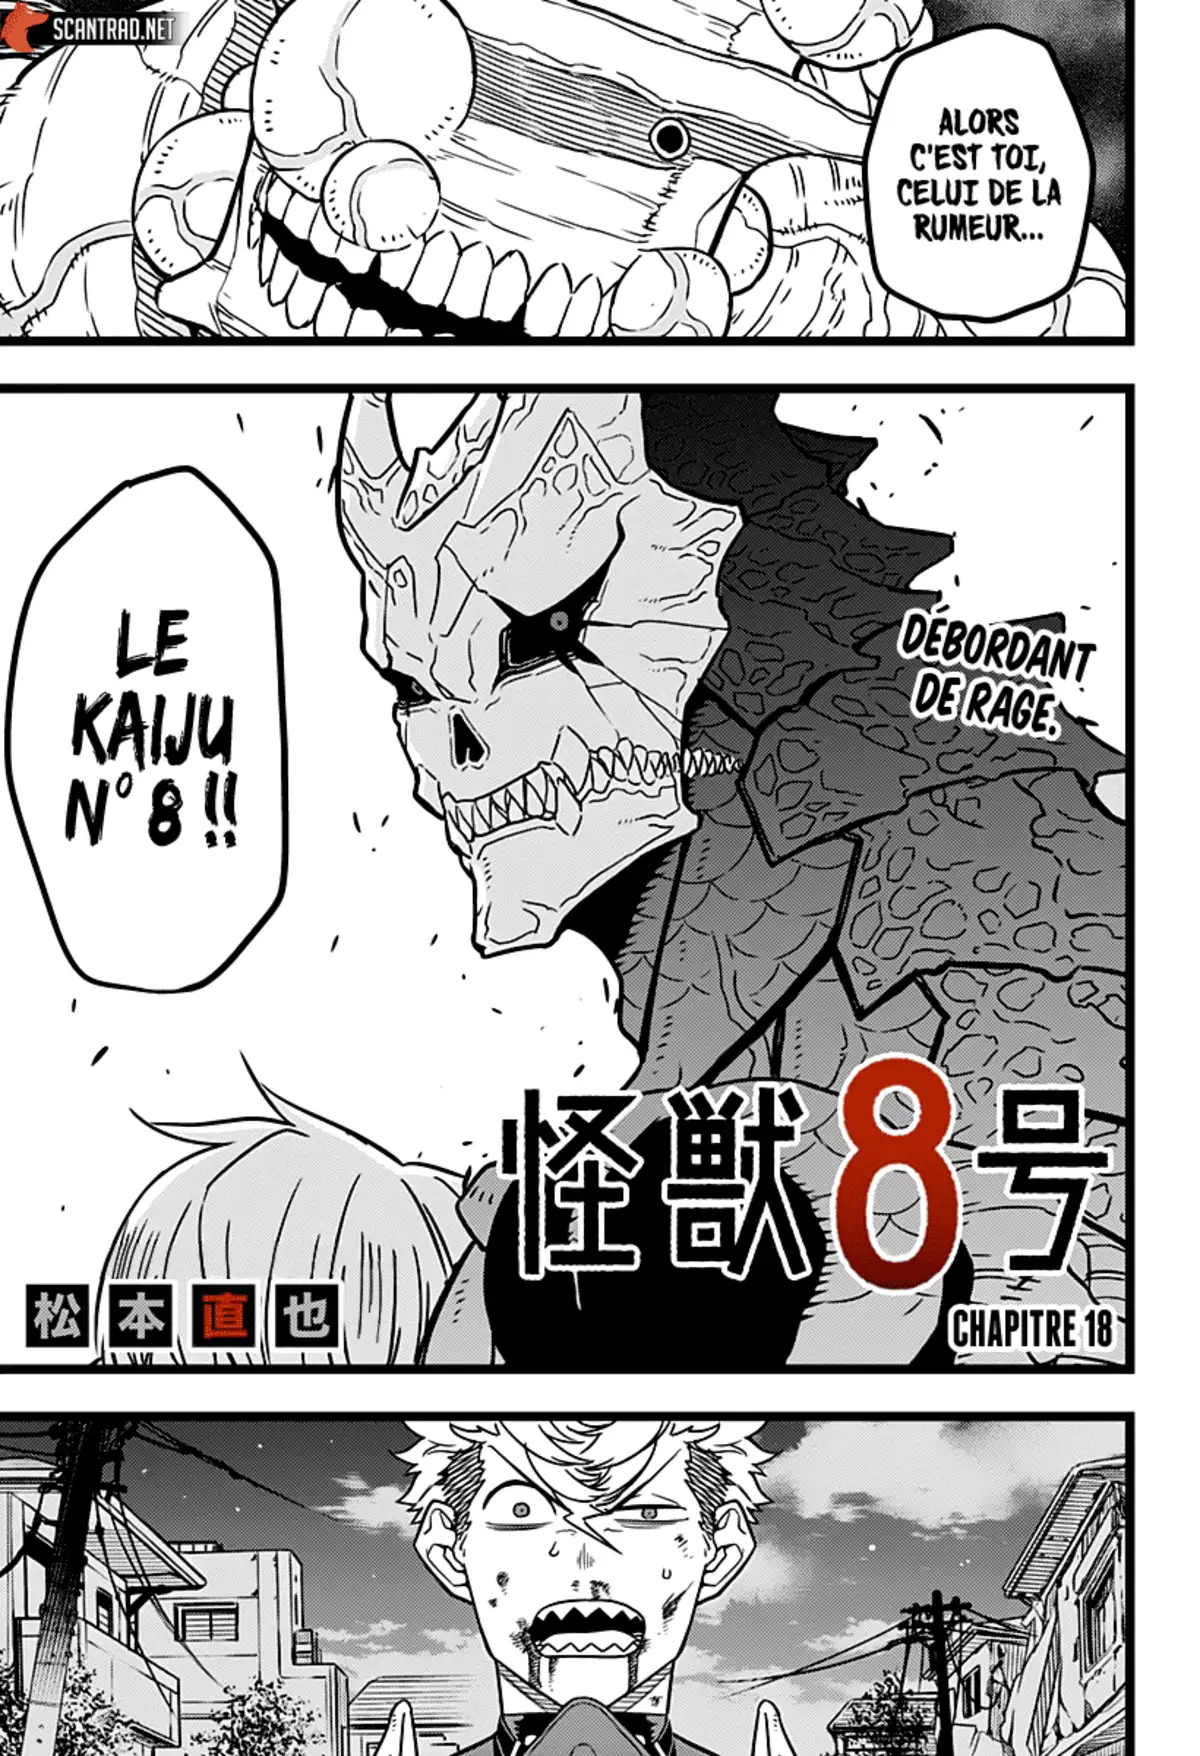 Kaiju No. 8 Volume 3 page 1